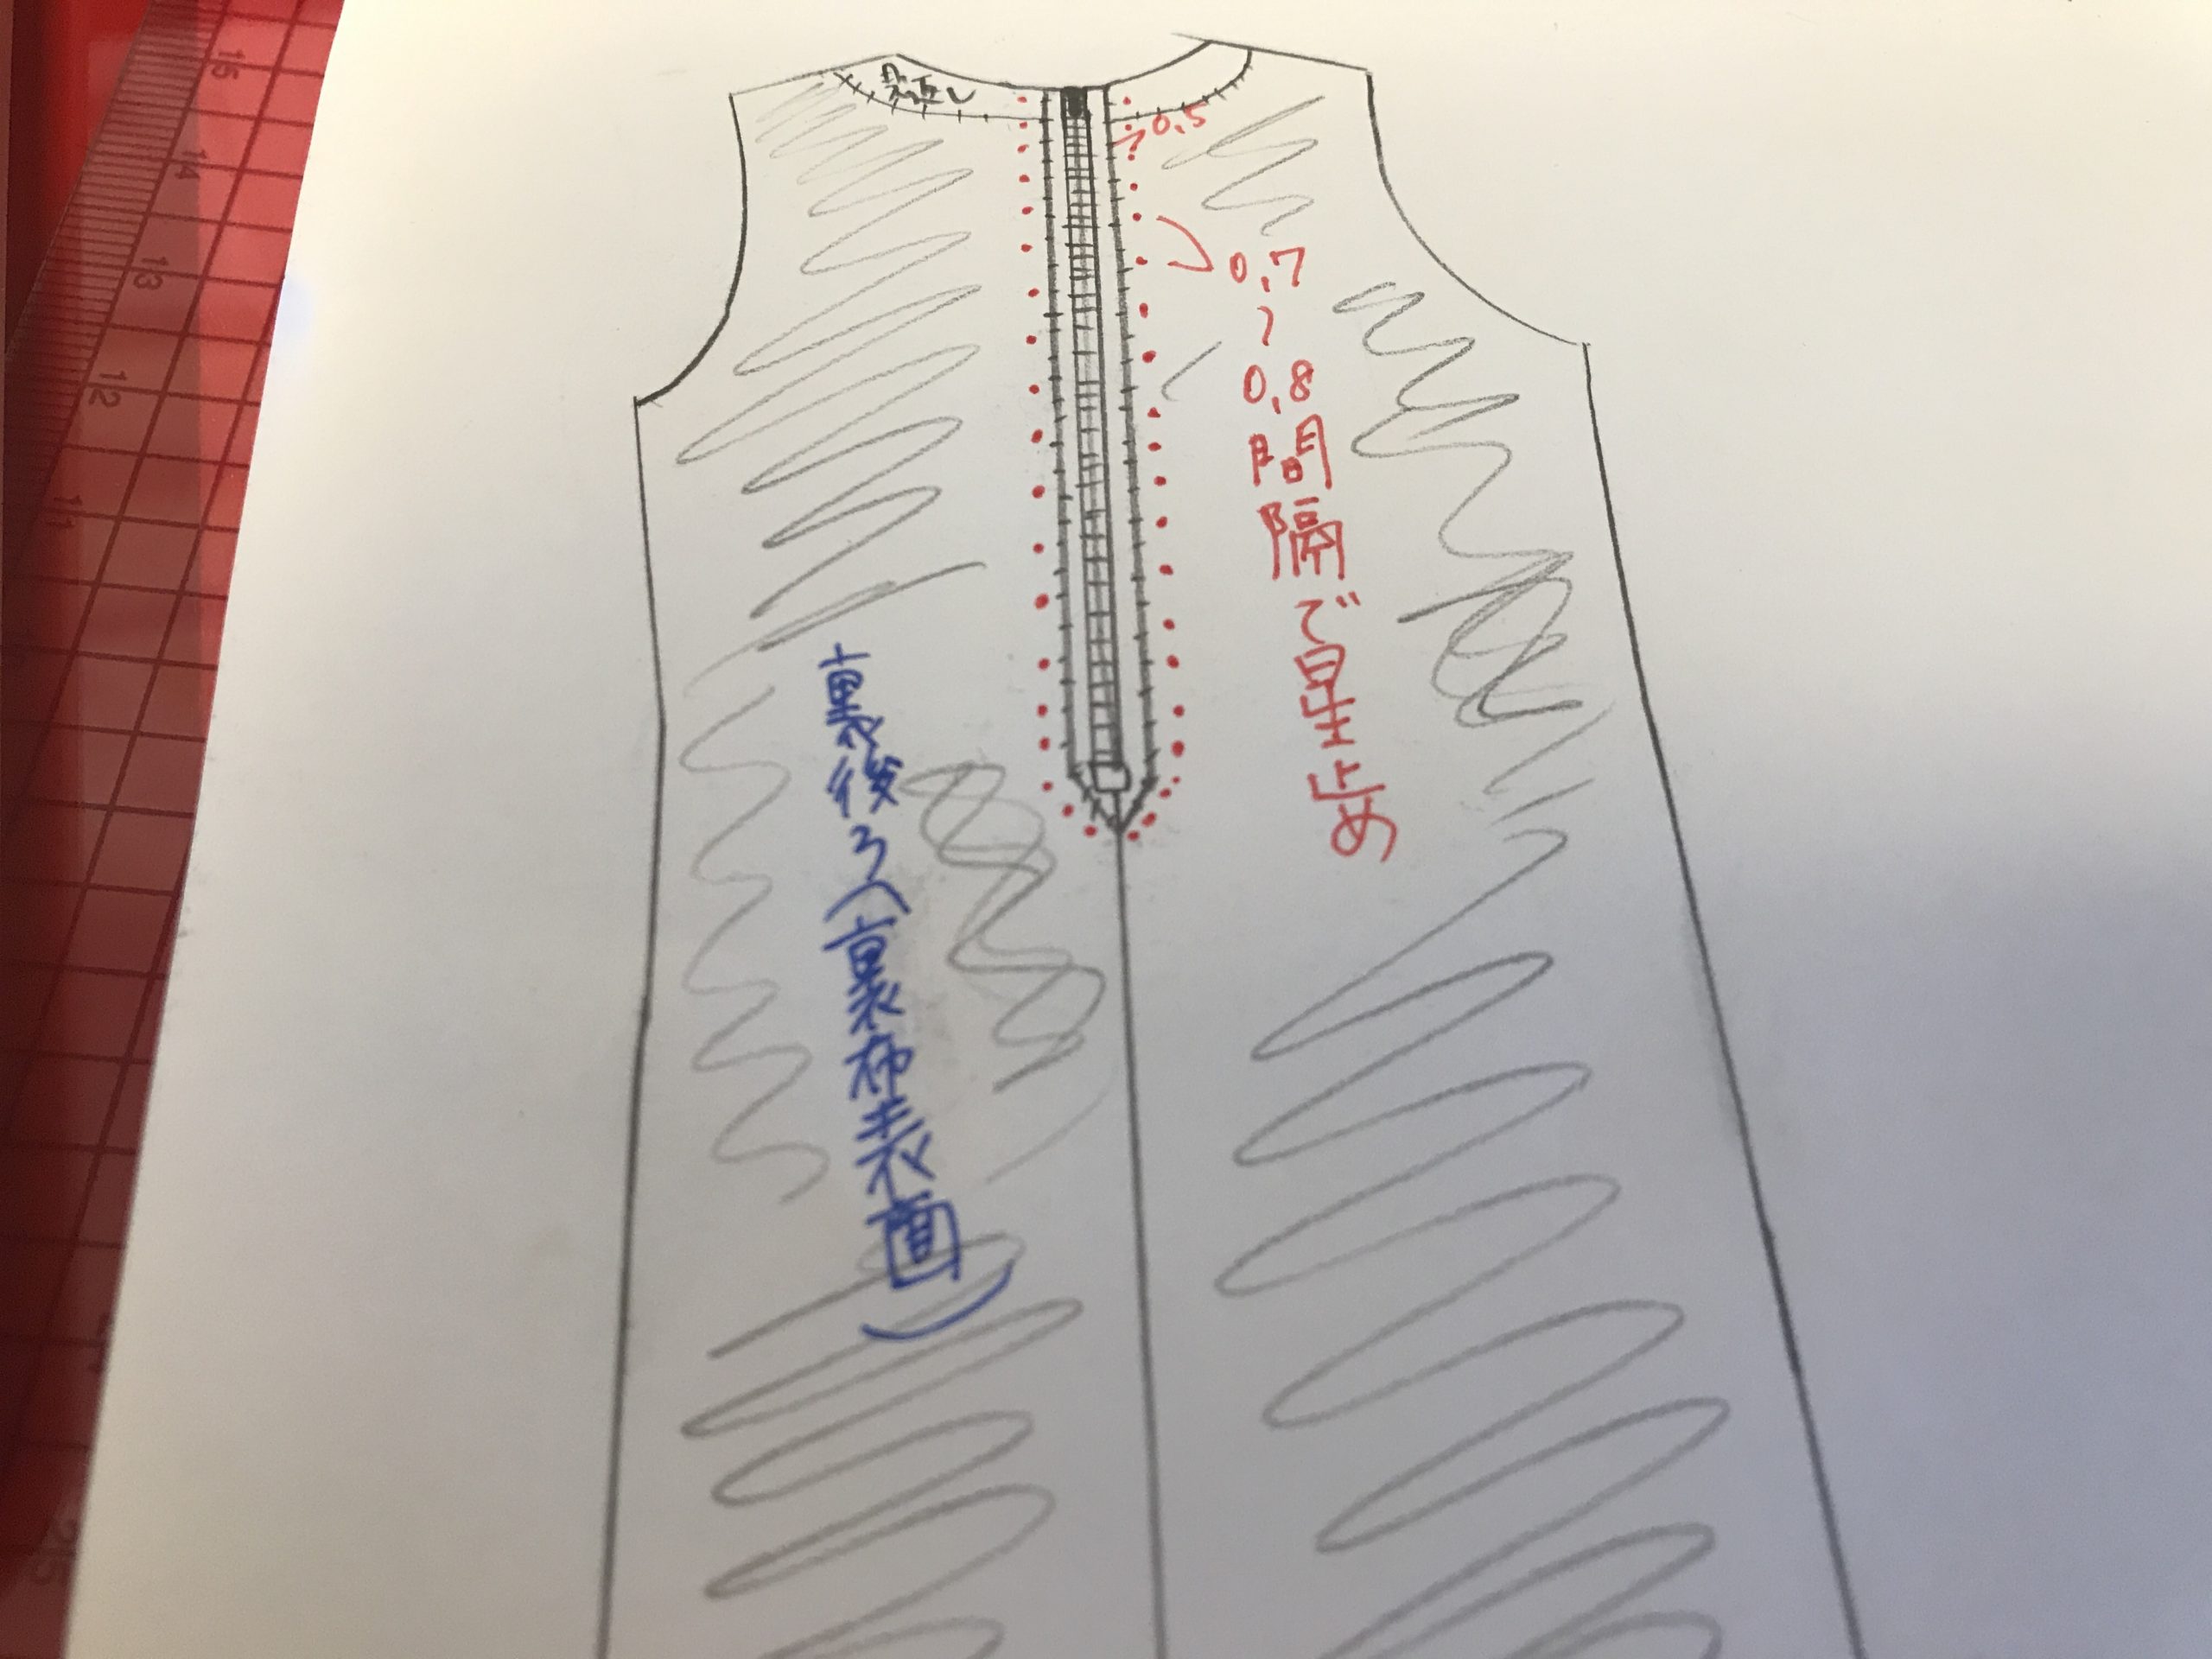 星止め の縫い方を学ぶ 自分の服を作りたい 洋裁初心者の服作りブログ